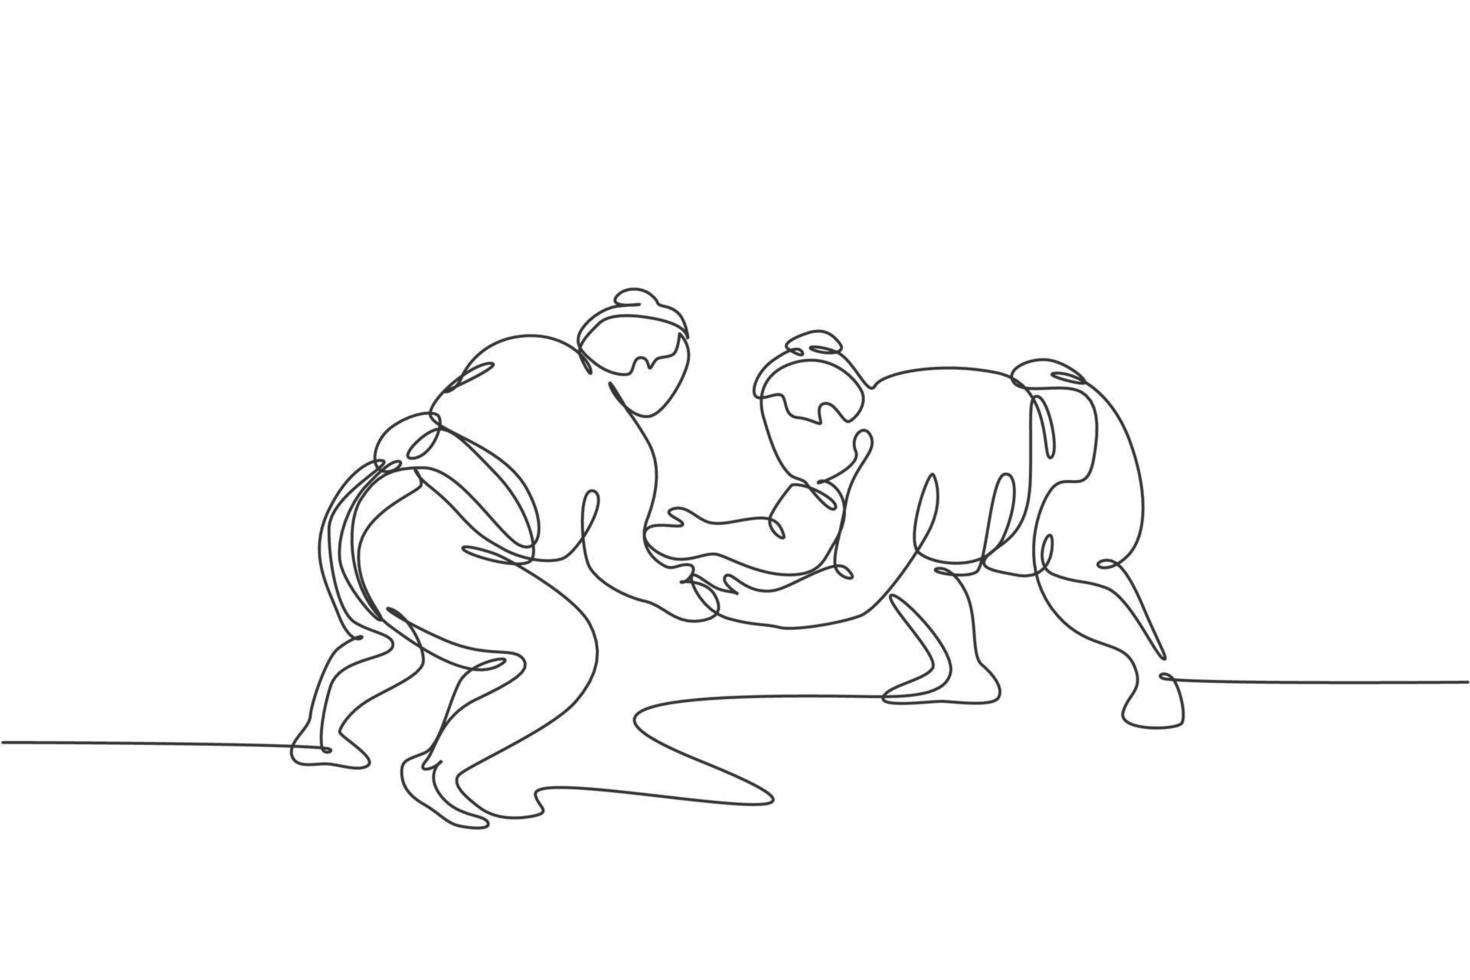 enkele doorlopende lijntekening twee jonge dikke Japanse sumomannen die vechten in het gymcentrum van de arena. traditioneel festival krijgskunstconcept. trendy één lijn tekenen grafisch ontwerp vectorillustratie vector